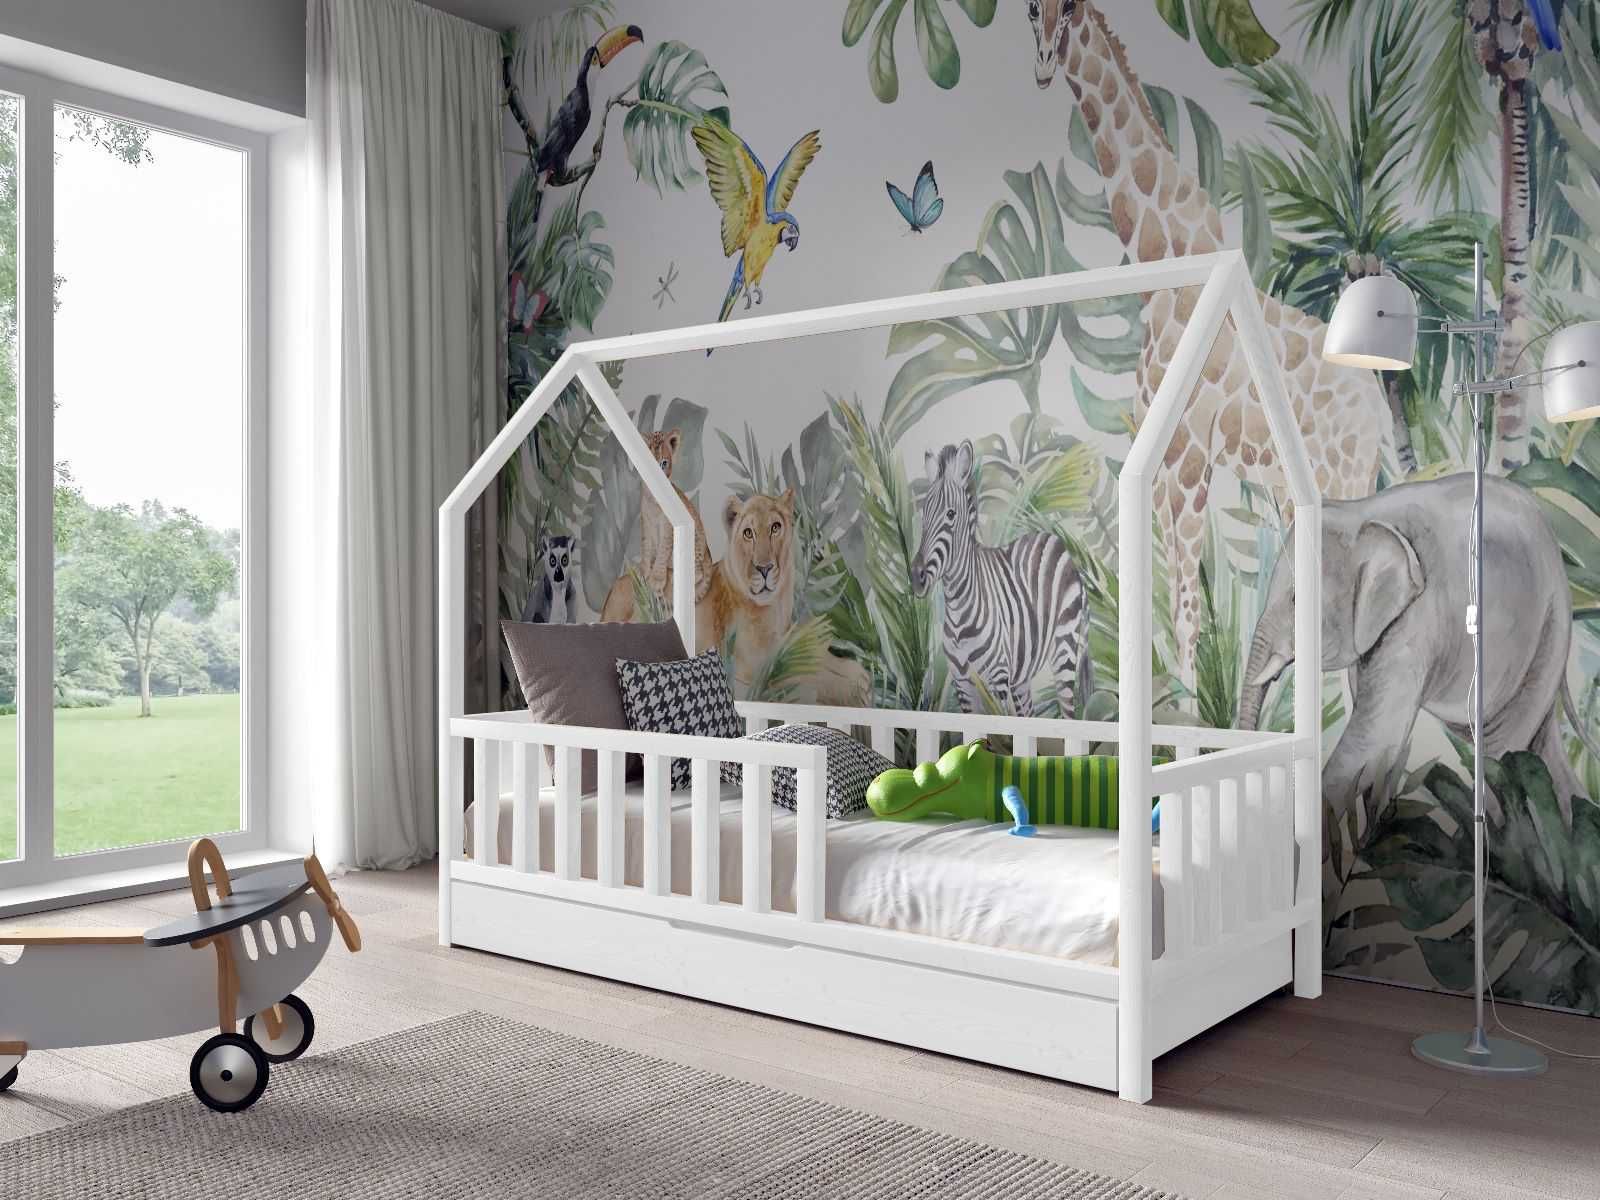 Sosnowe łóżko dziecięce ANTOŚ 160x80 cm + materac piankowy